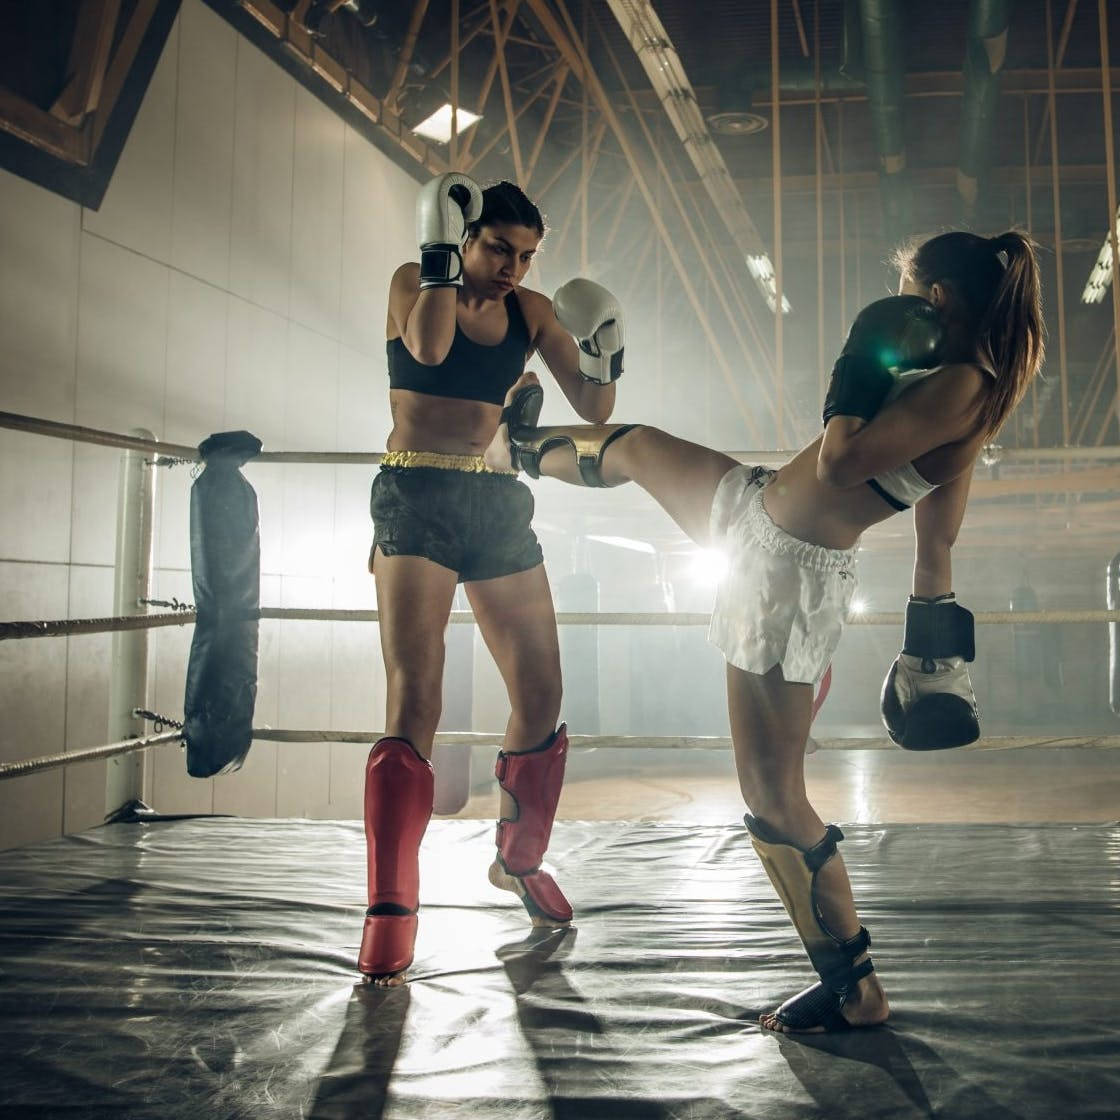 Zweifrauen In Einem Kickbox-sparringskampf Wallpaper